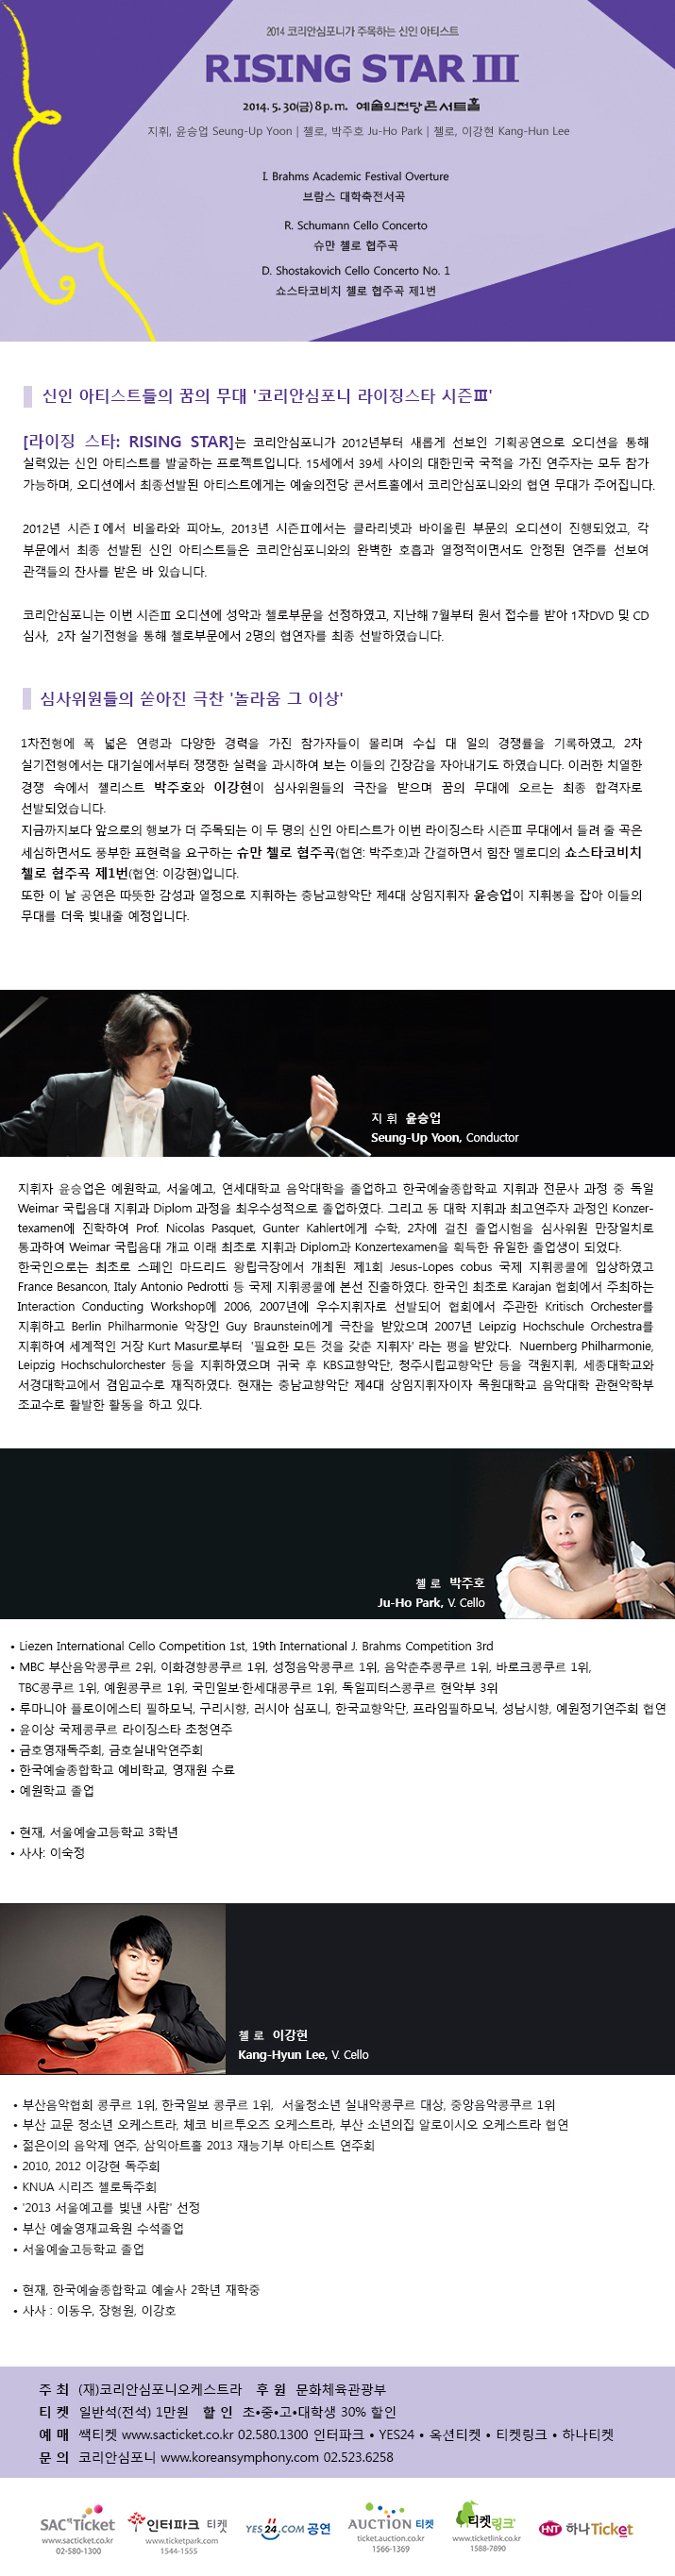 (5.30) 2014코리안심포니가 주목하는 신인아티스트 [라이징스타 시즌Ⅲ] 이미지